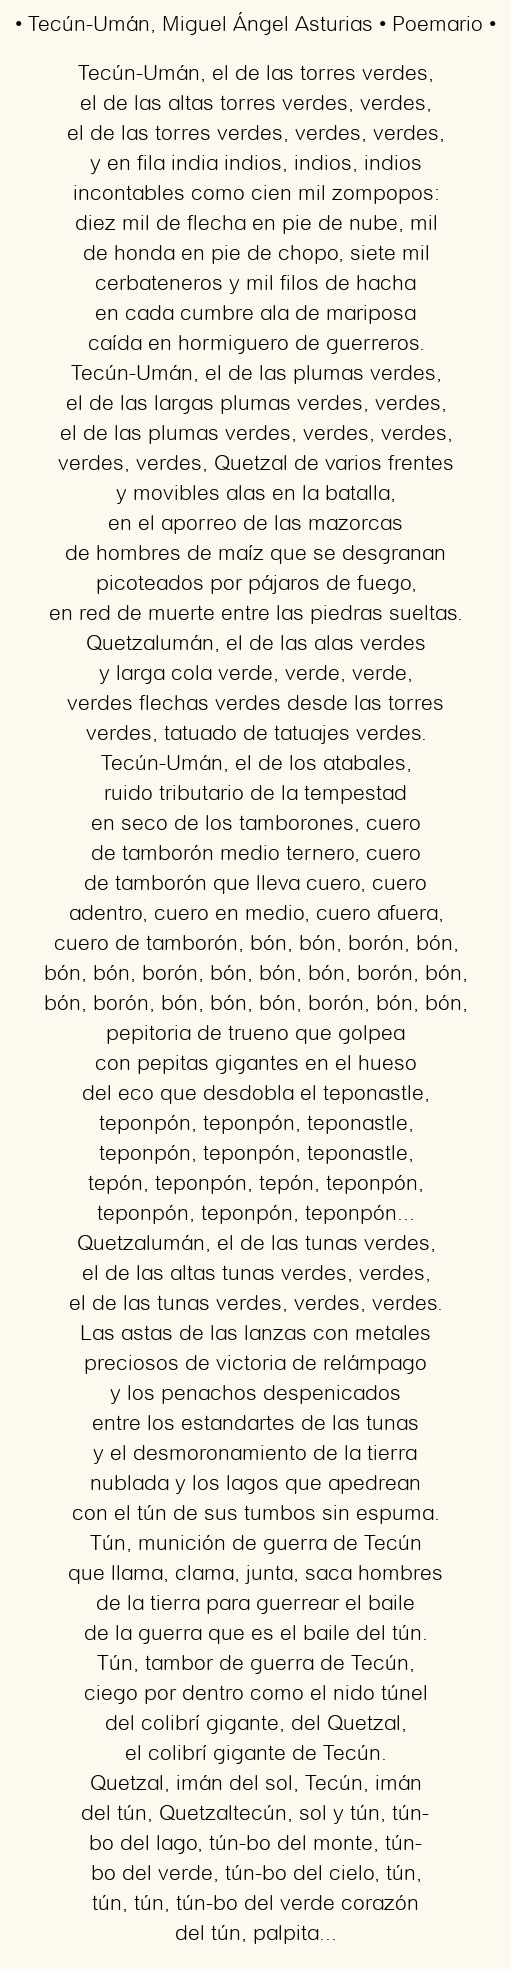 Imagen con el poema Tecún-Umán, por Miguel Ángel Asturias